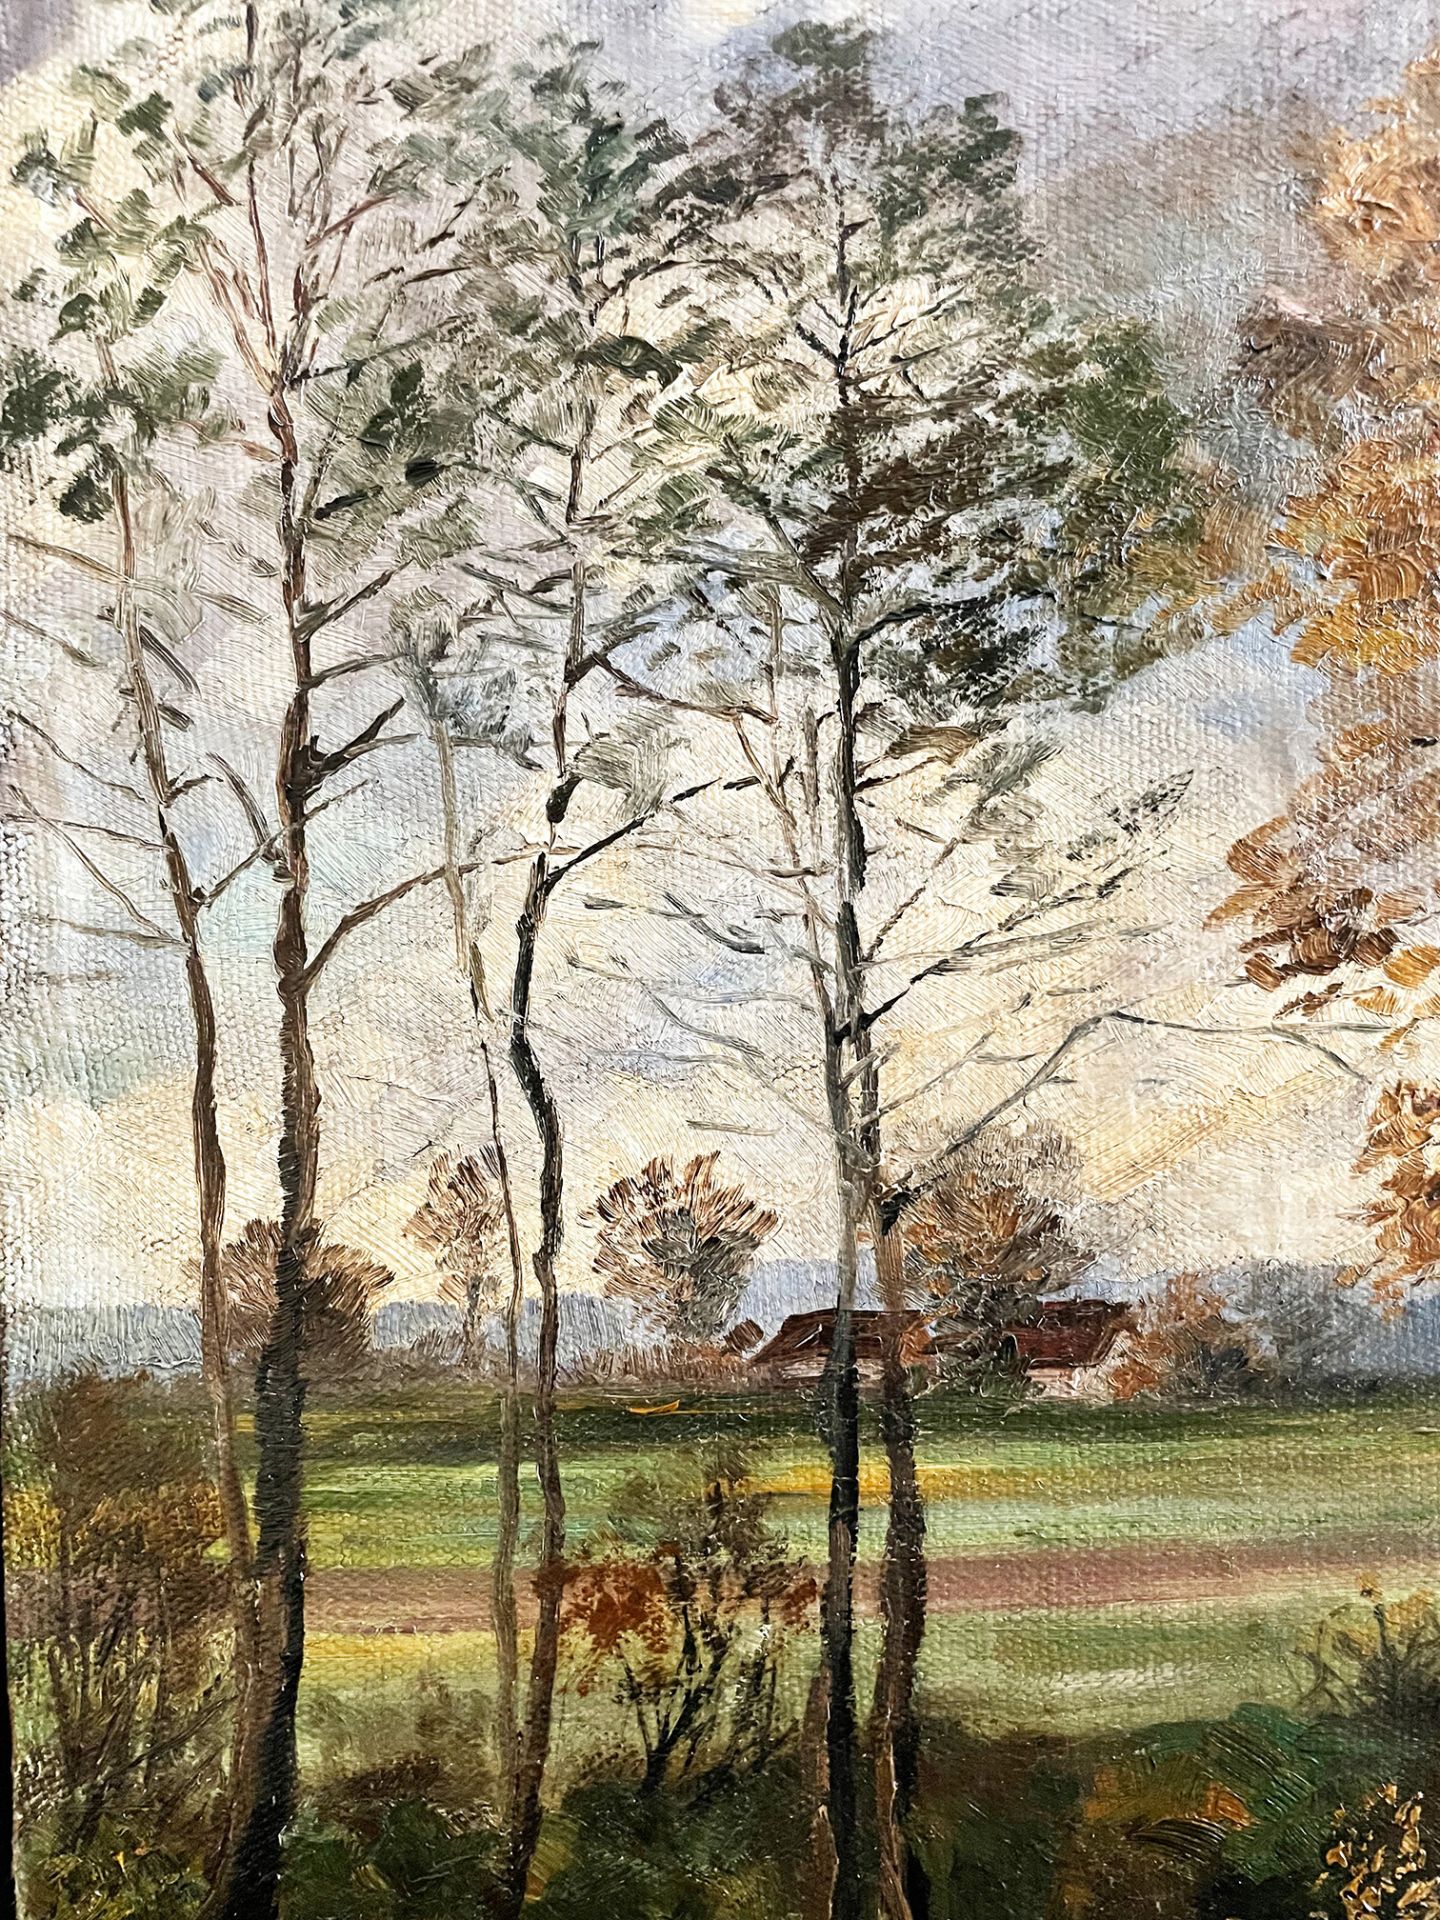 A. Wild, Landschaft mit Bäumen in herbstlicher Stimmung, signiert, Öl/Lwd. 70 x 102 cm. - Image 6 of 6